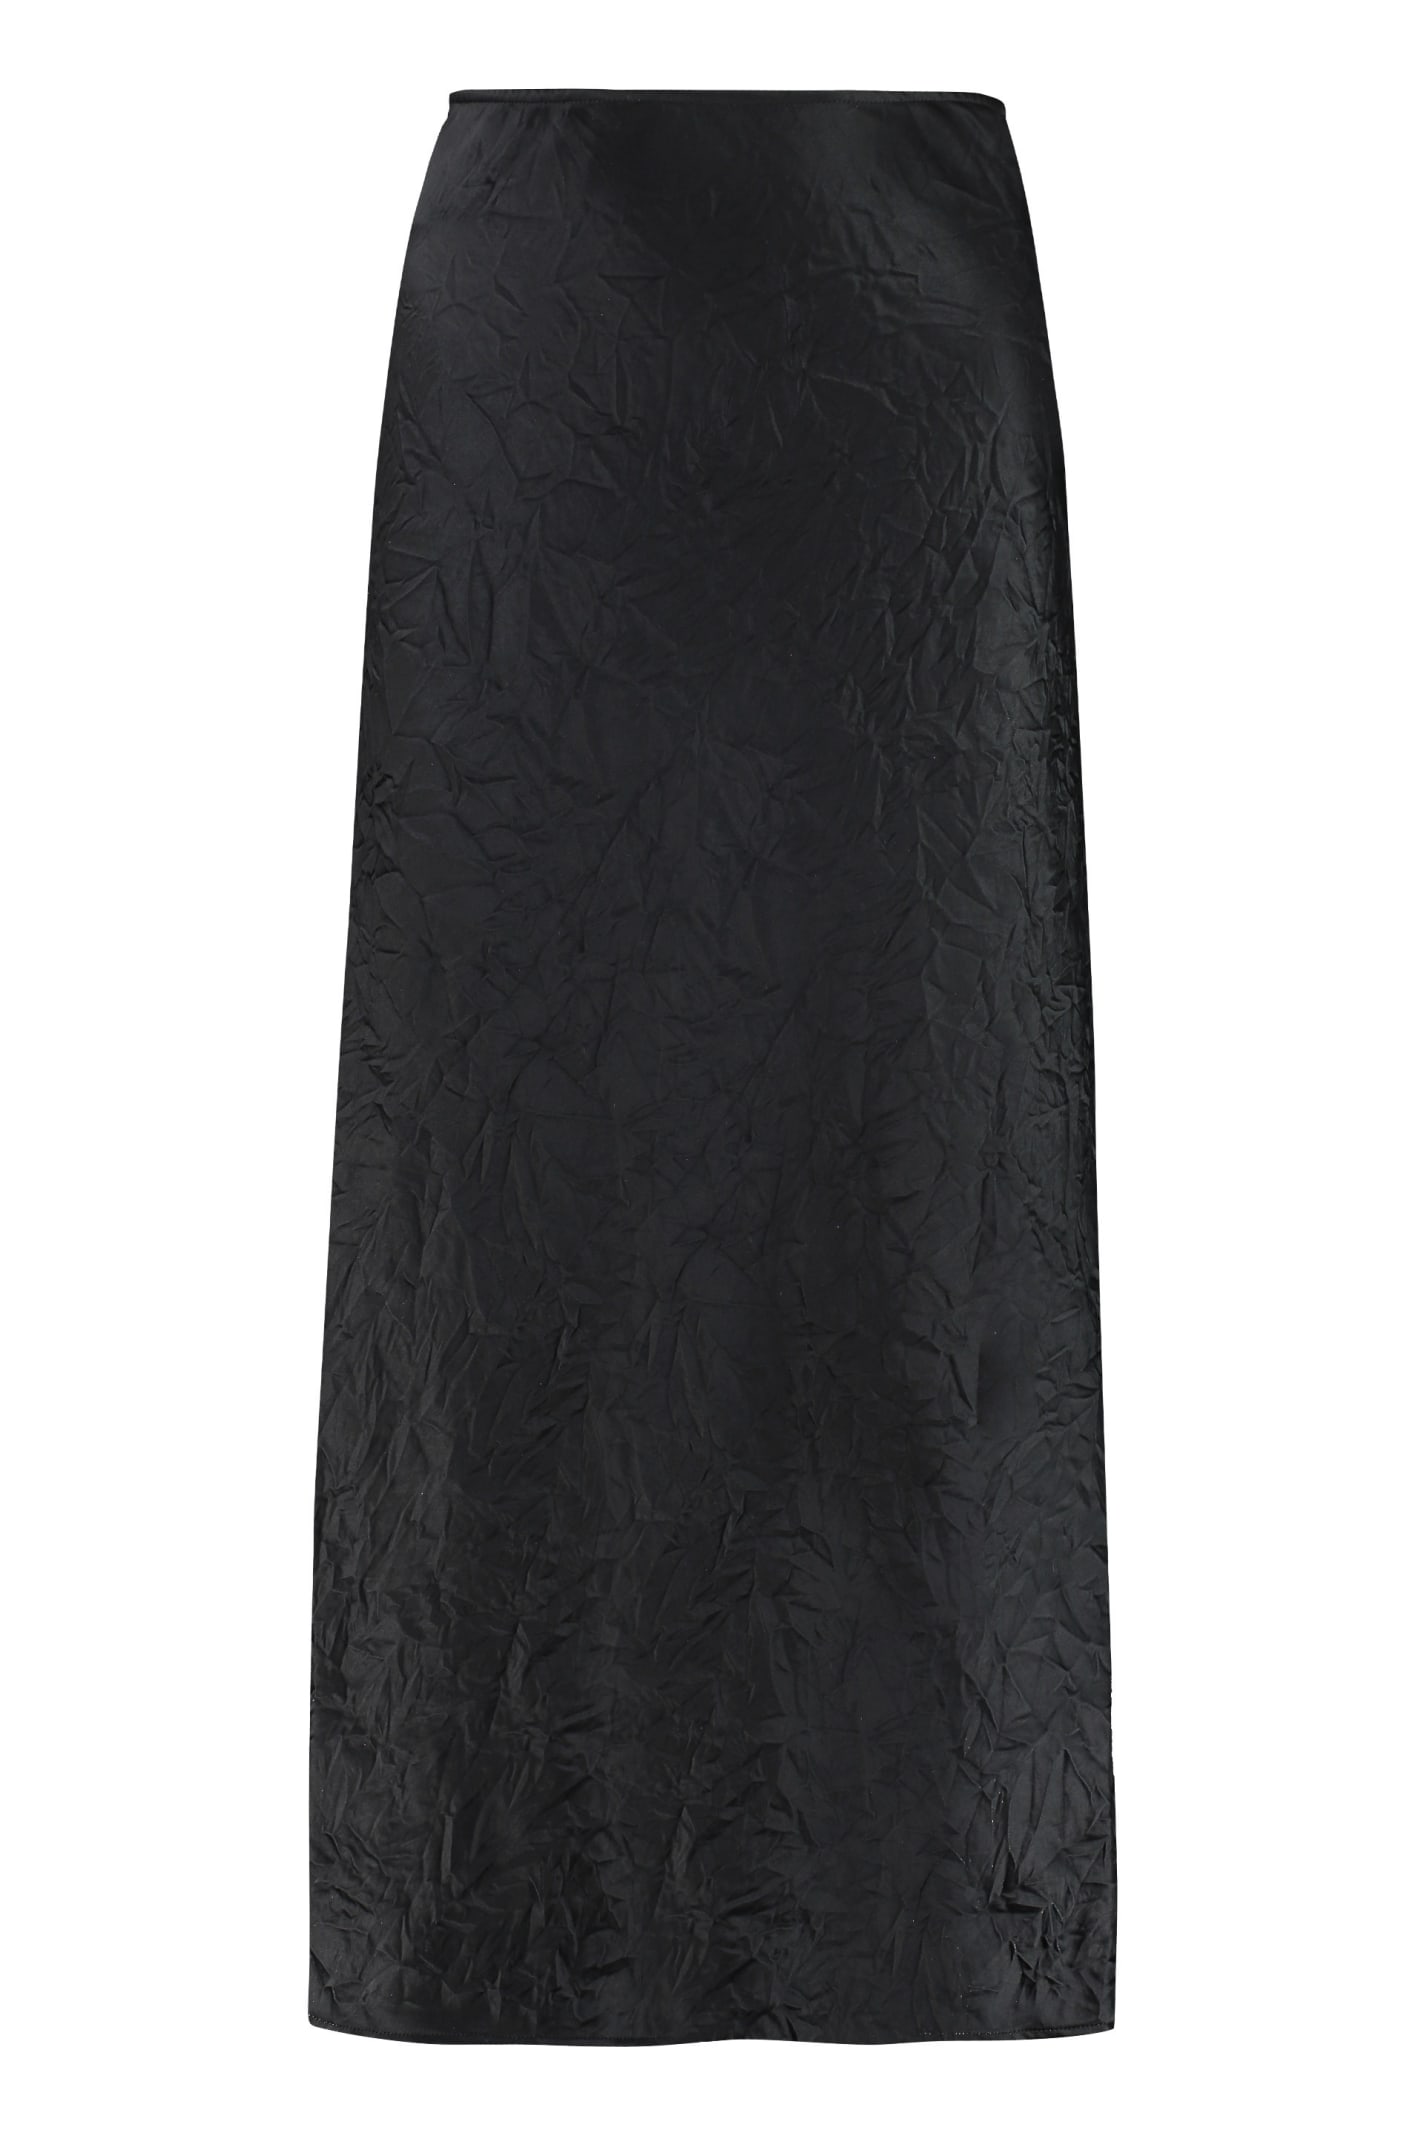 Ganni Satin Midi Skirt In Black